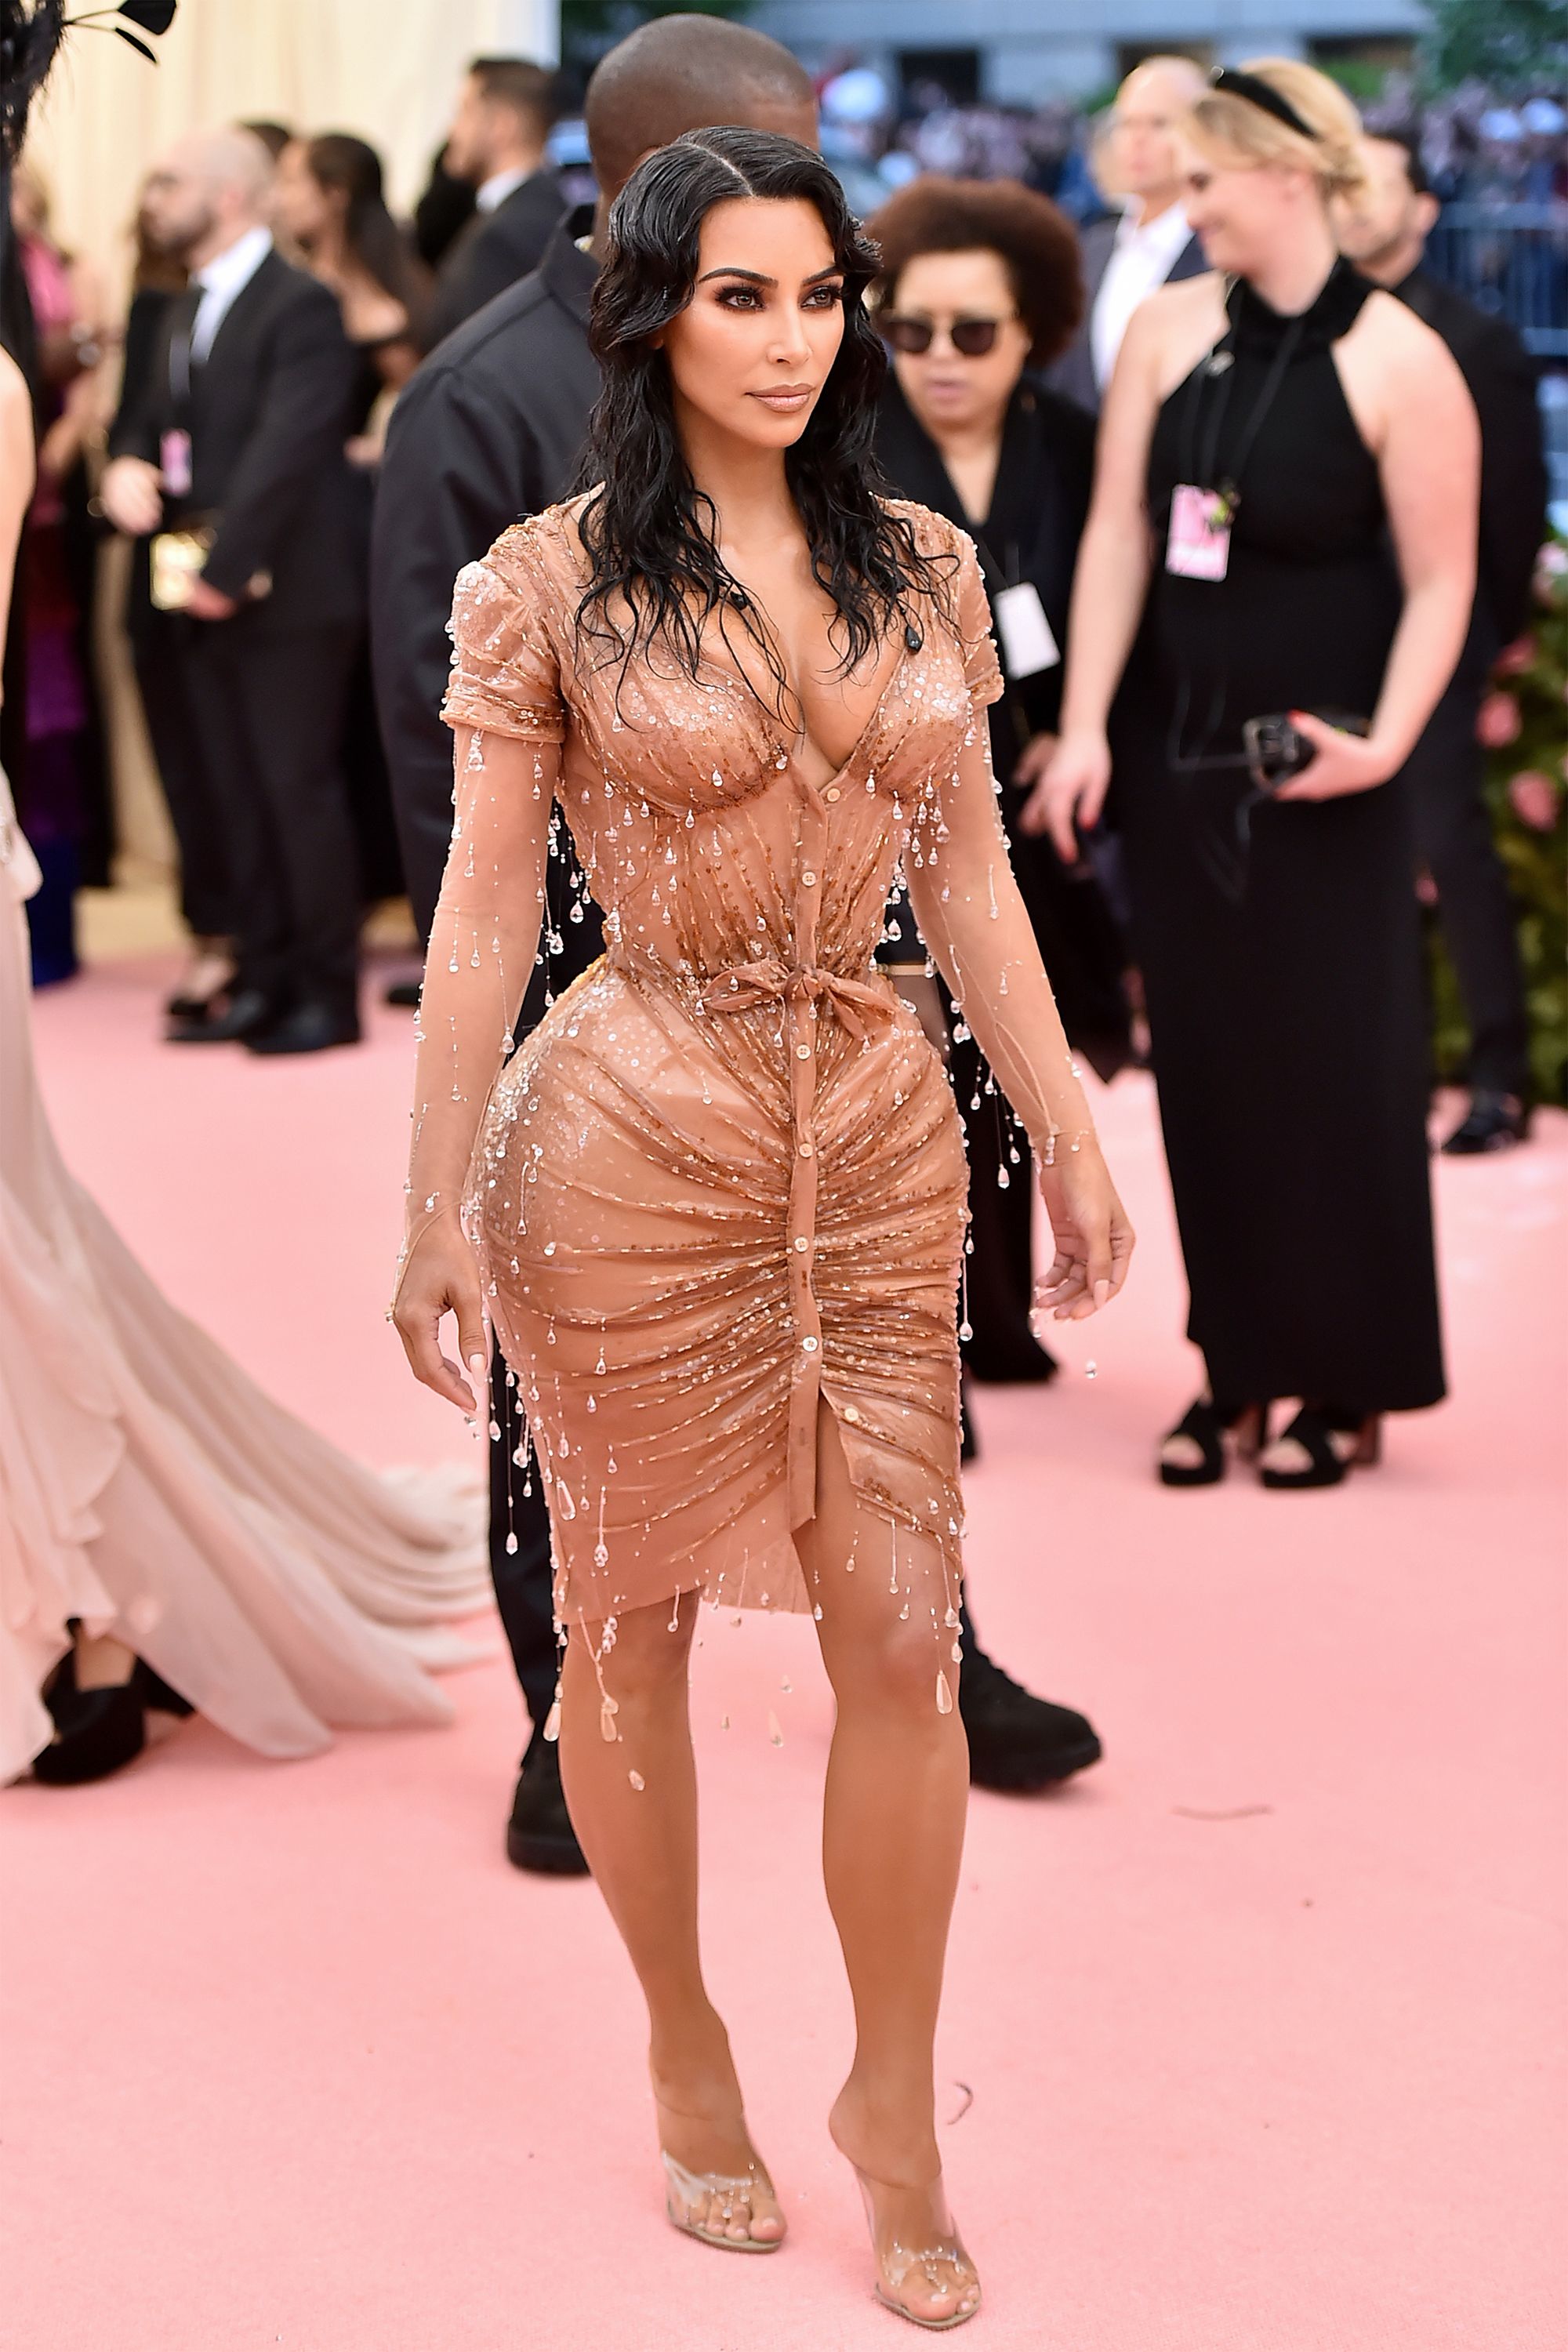 Kim Kardashian Renames Her Kimono Shapewear Label 